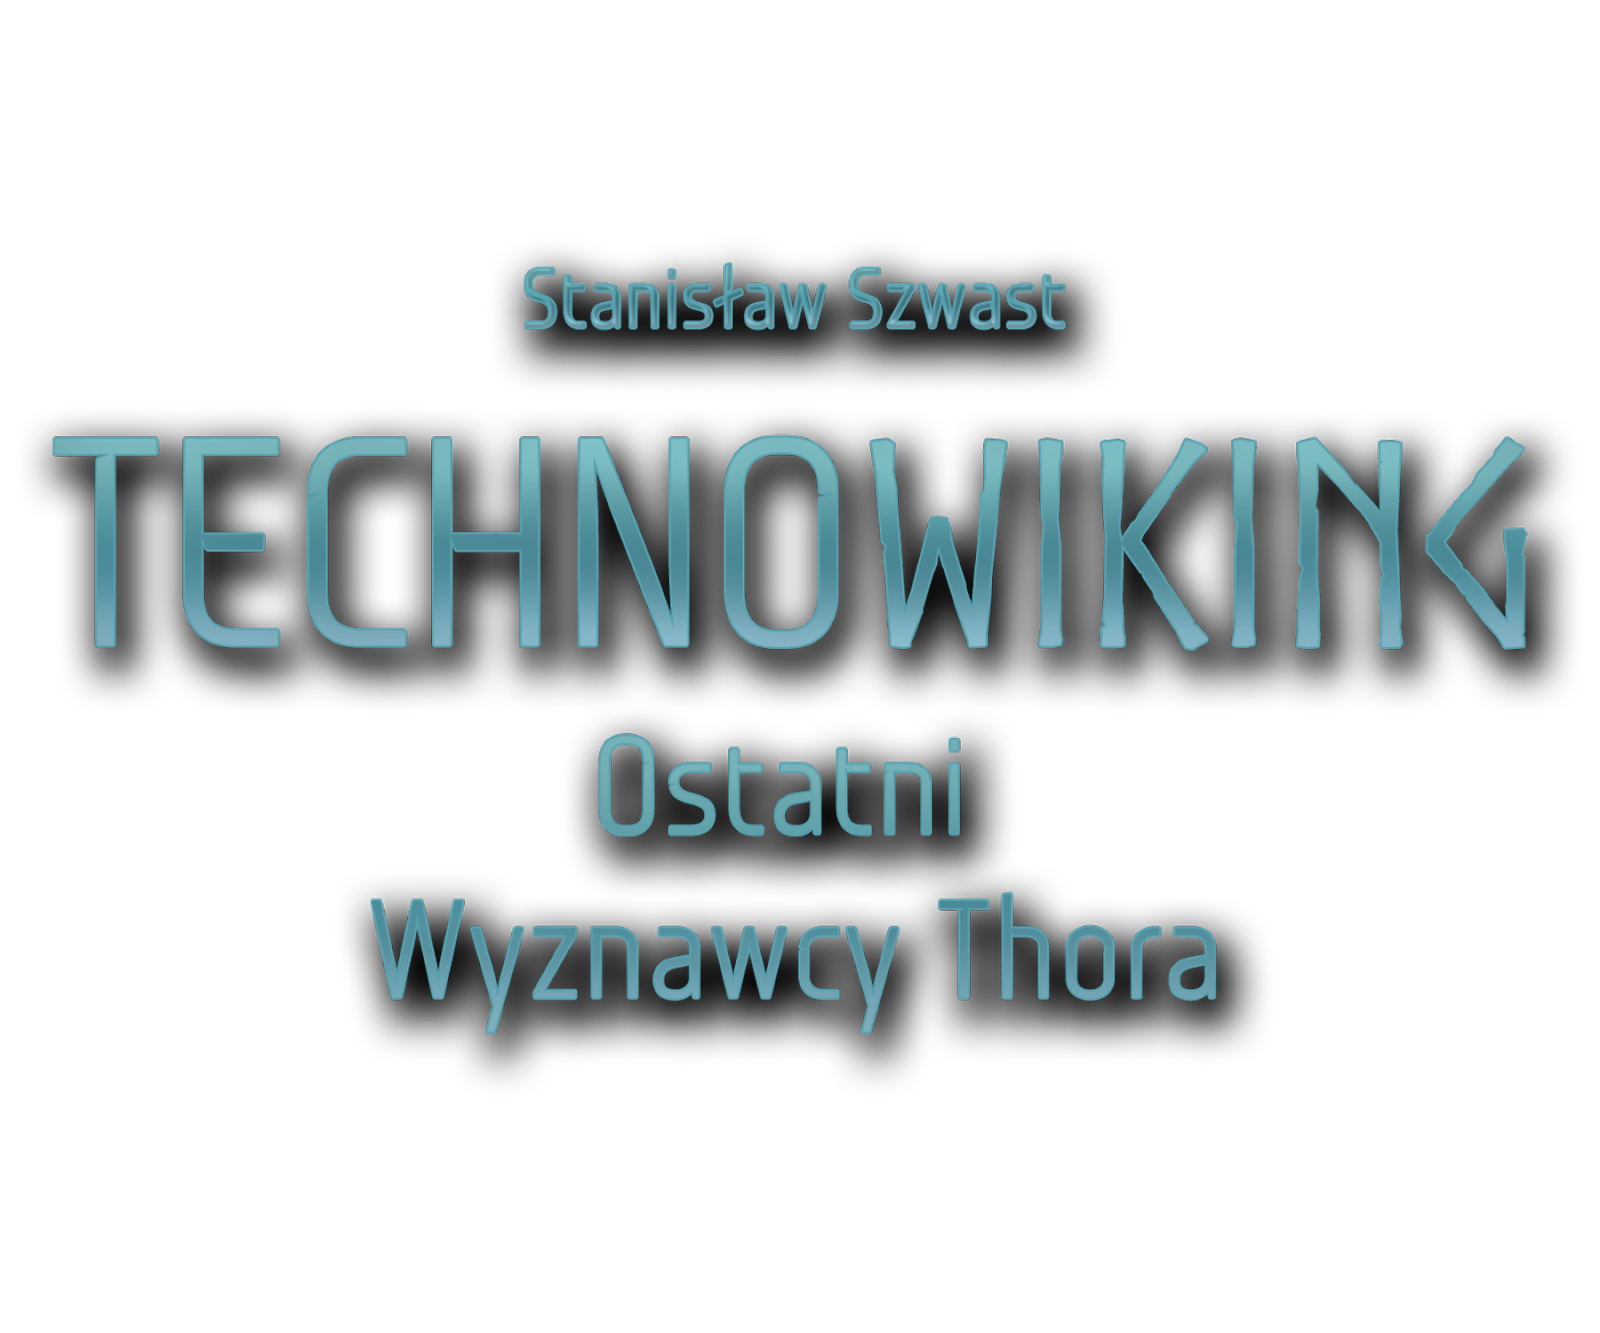 Książka Technowiking - Ostatni Wyznawcy Thora Stanisława Szwasta – science fantasy - LOGO